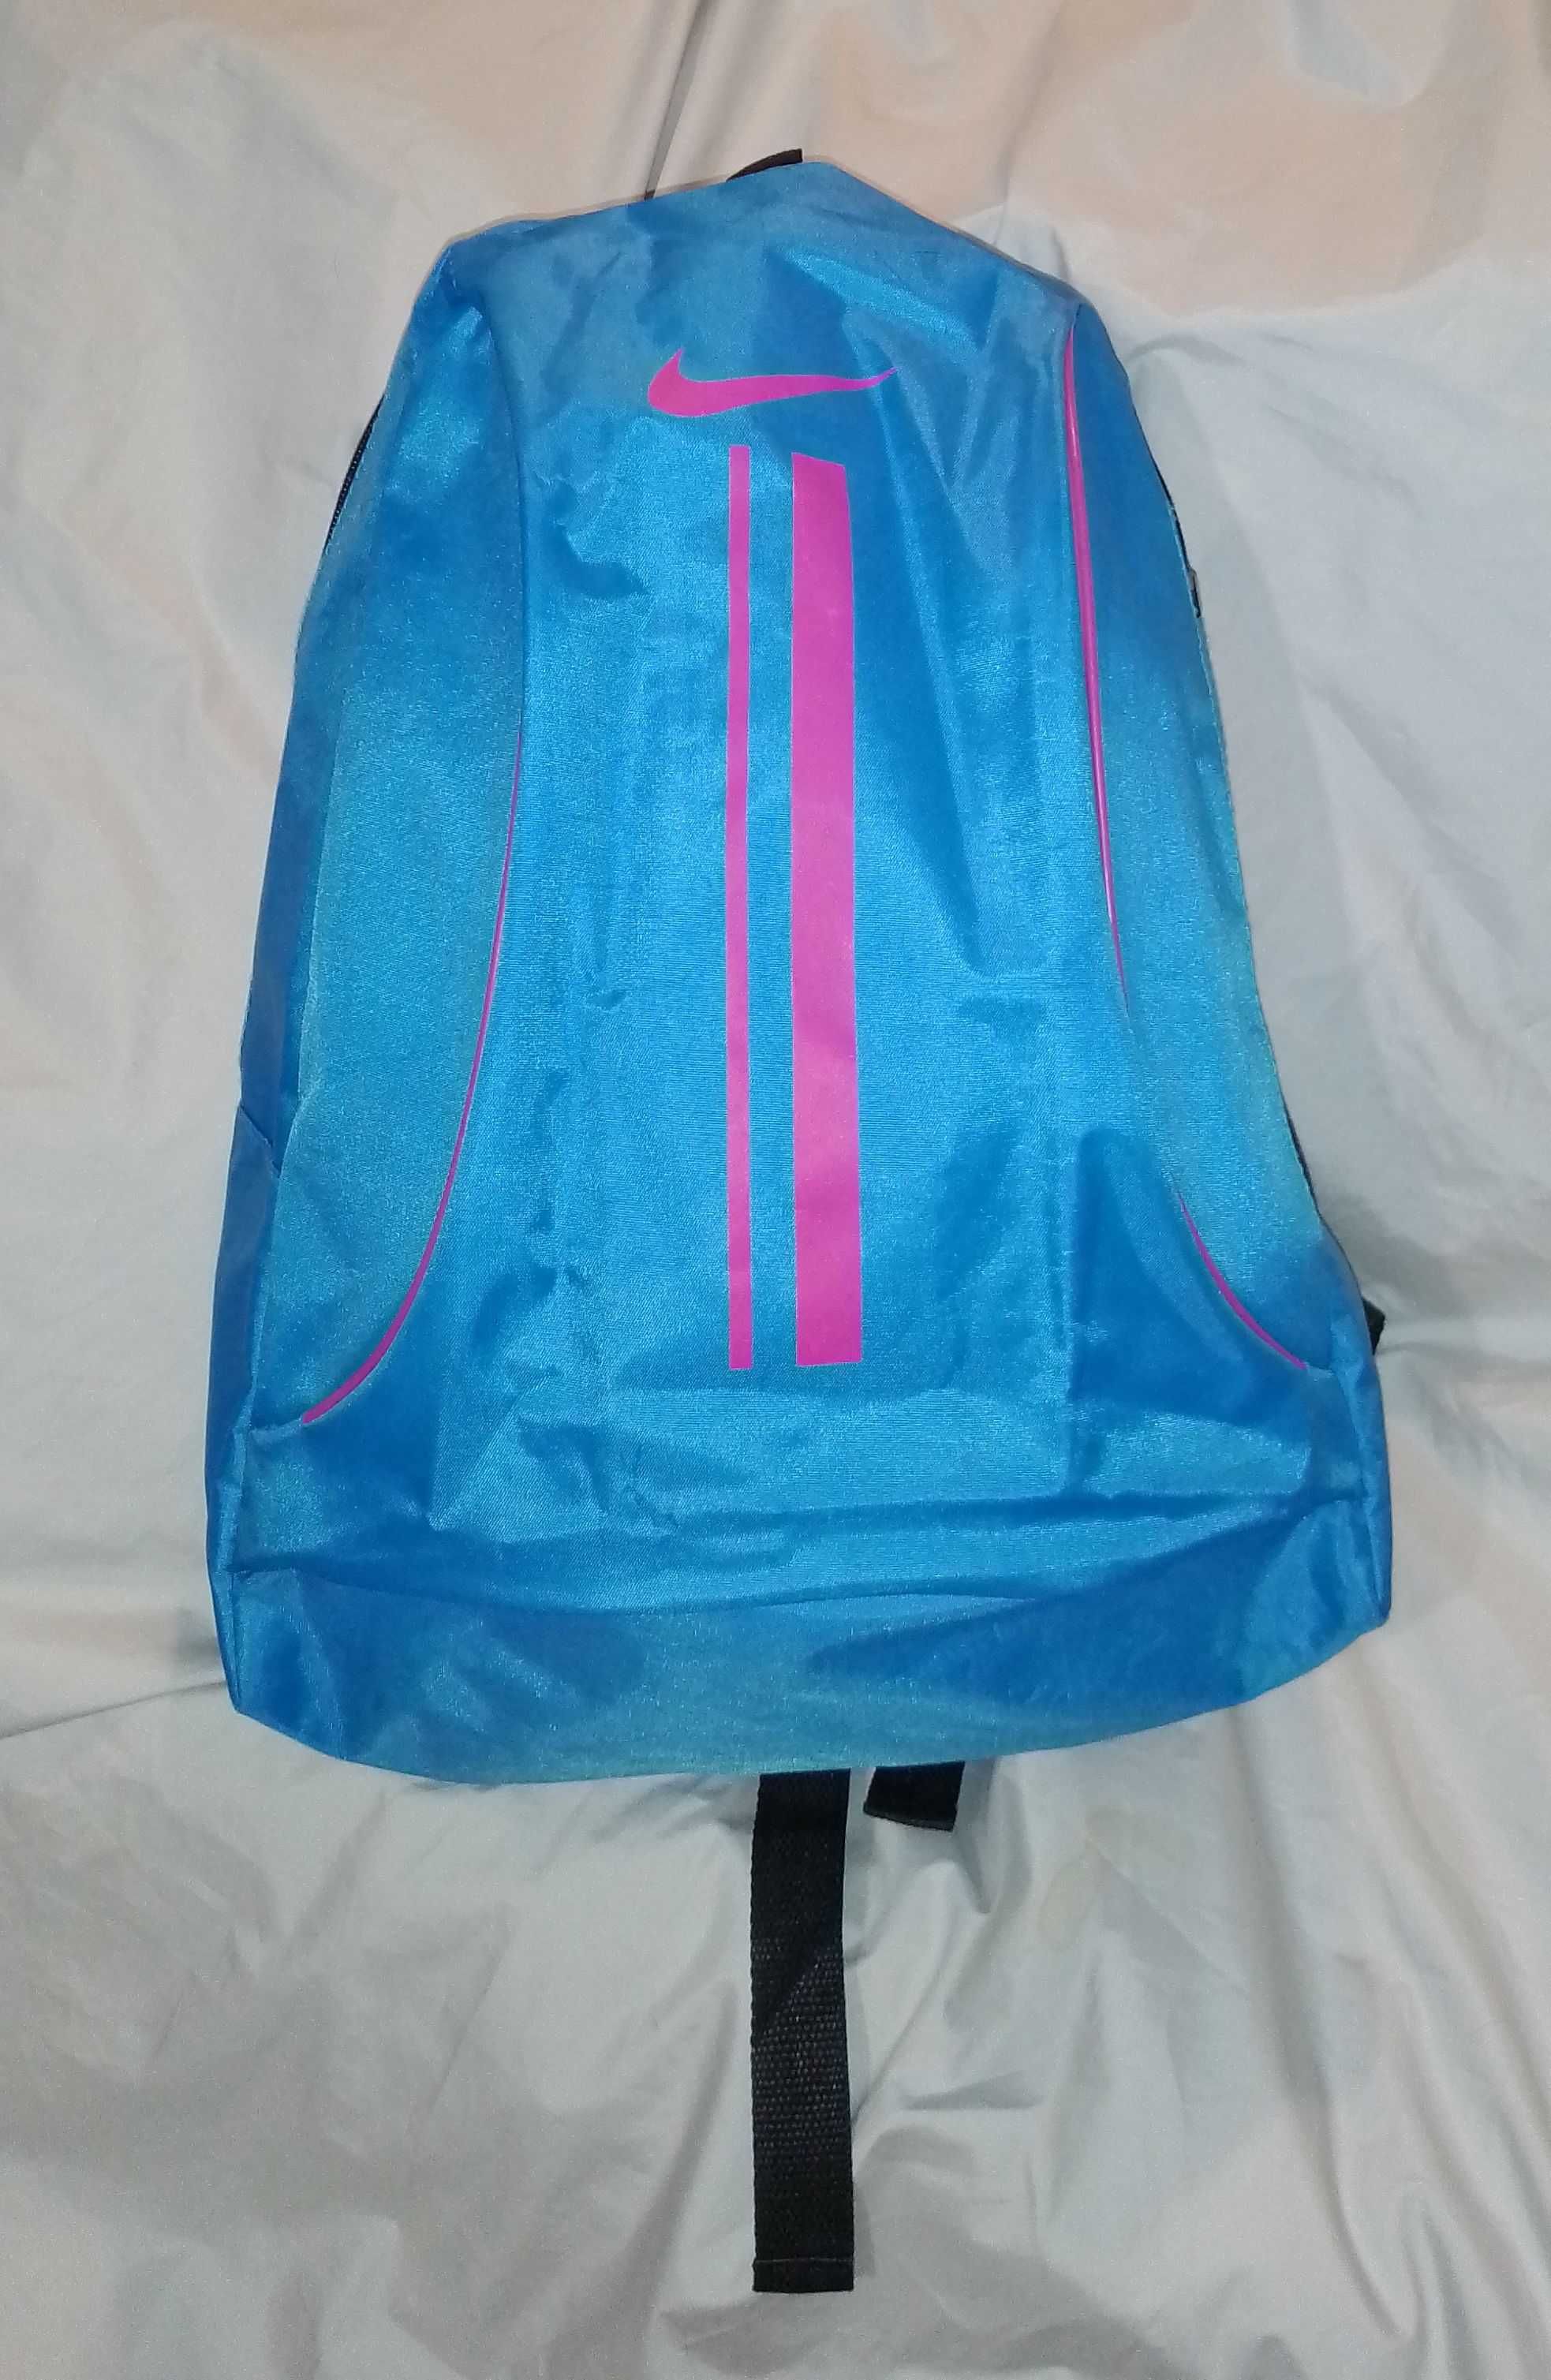 Школьный рюкзак, гибкий портфель, рюкзак для подростка, город, спорт